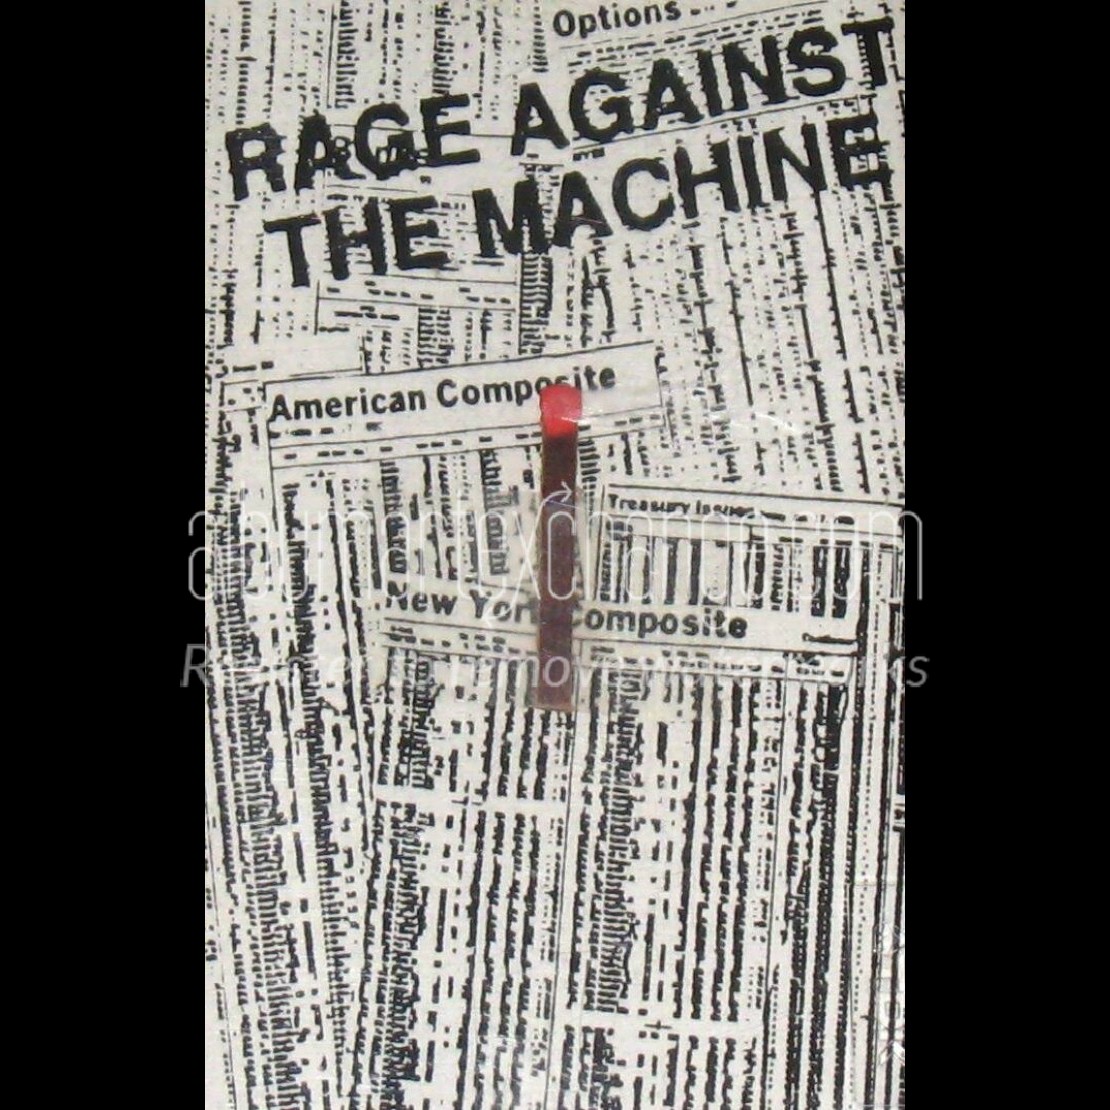 Album Art Exchange Rage Against The Machine Cassette Demo By